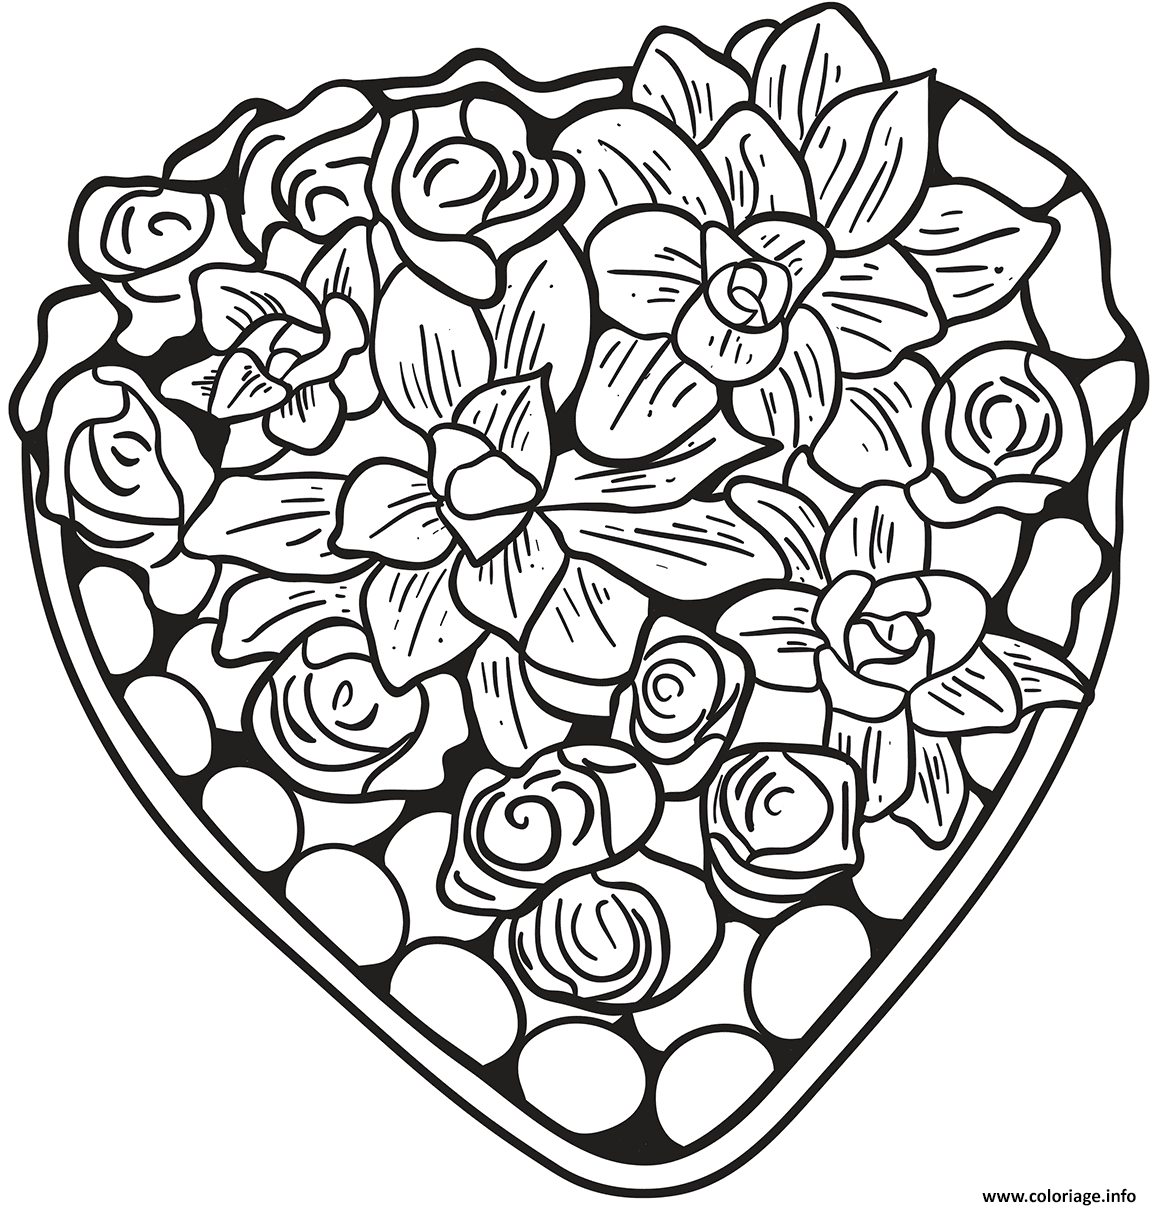 Coloriage Un Jolie Coeur Fait De Fleurs Et Roses - Jecolorie destiné Coloriage Fleurs Roses